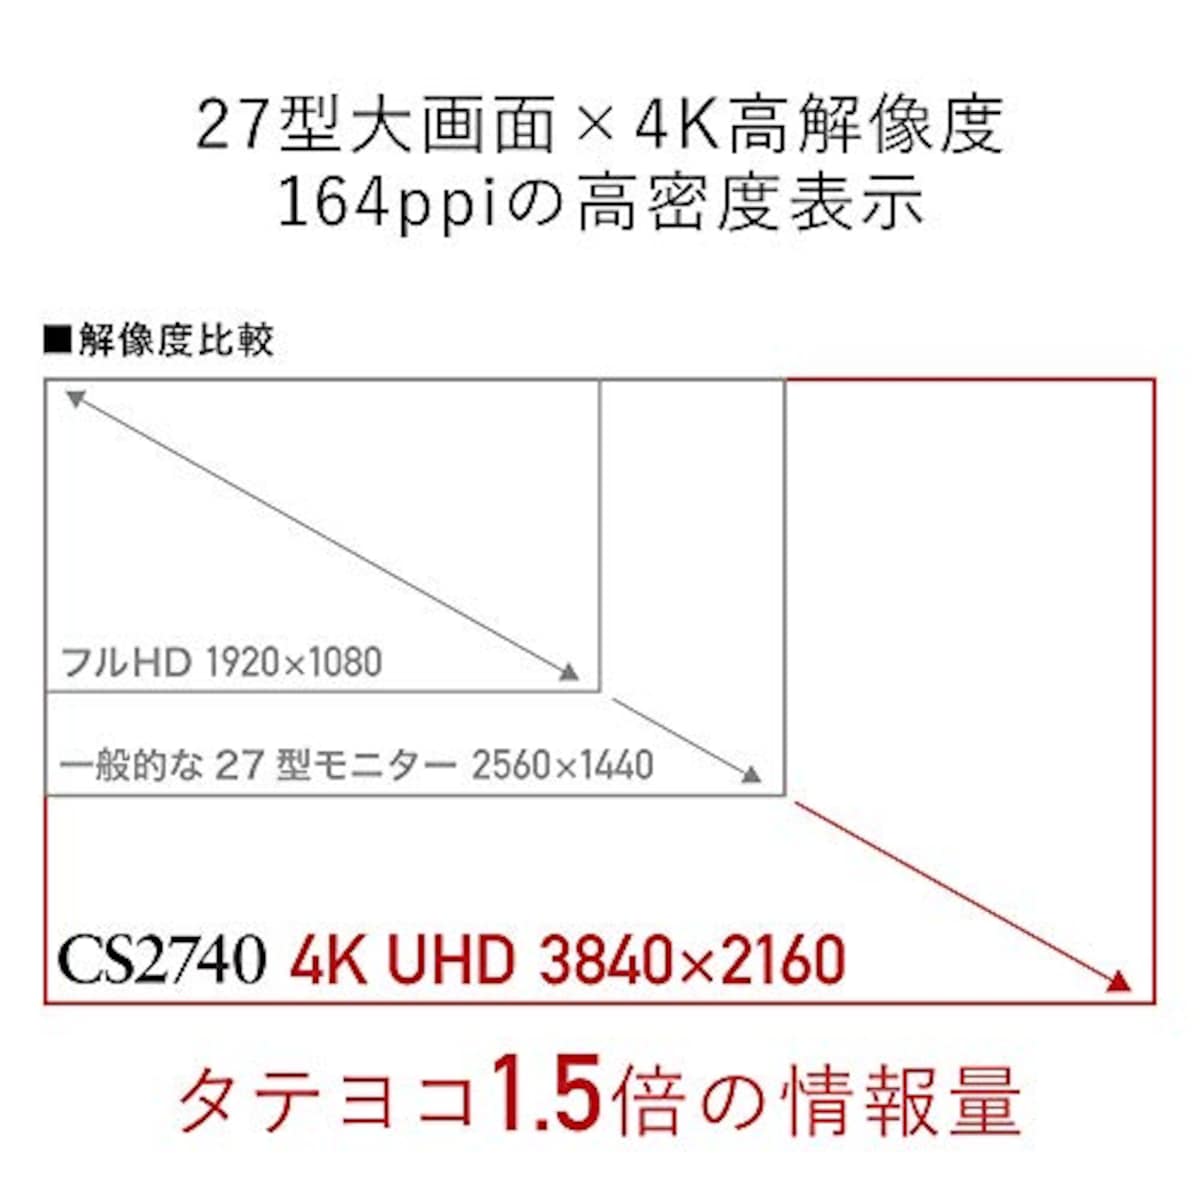  EIZO ColorEdge CS2740 (27型カラーマネージメント液晶モニター/4K UHD/Adobe RGB 99%/USB Type-C/)画像3 